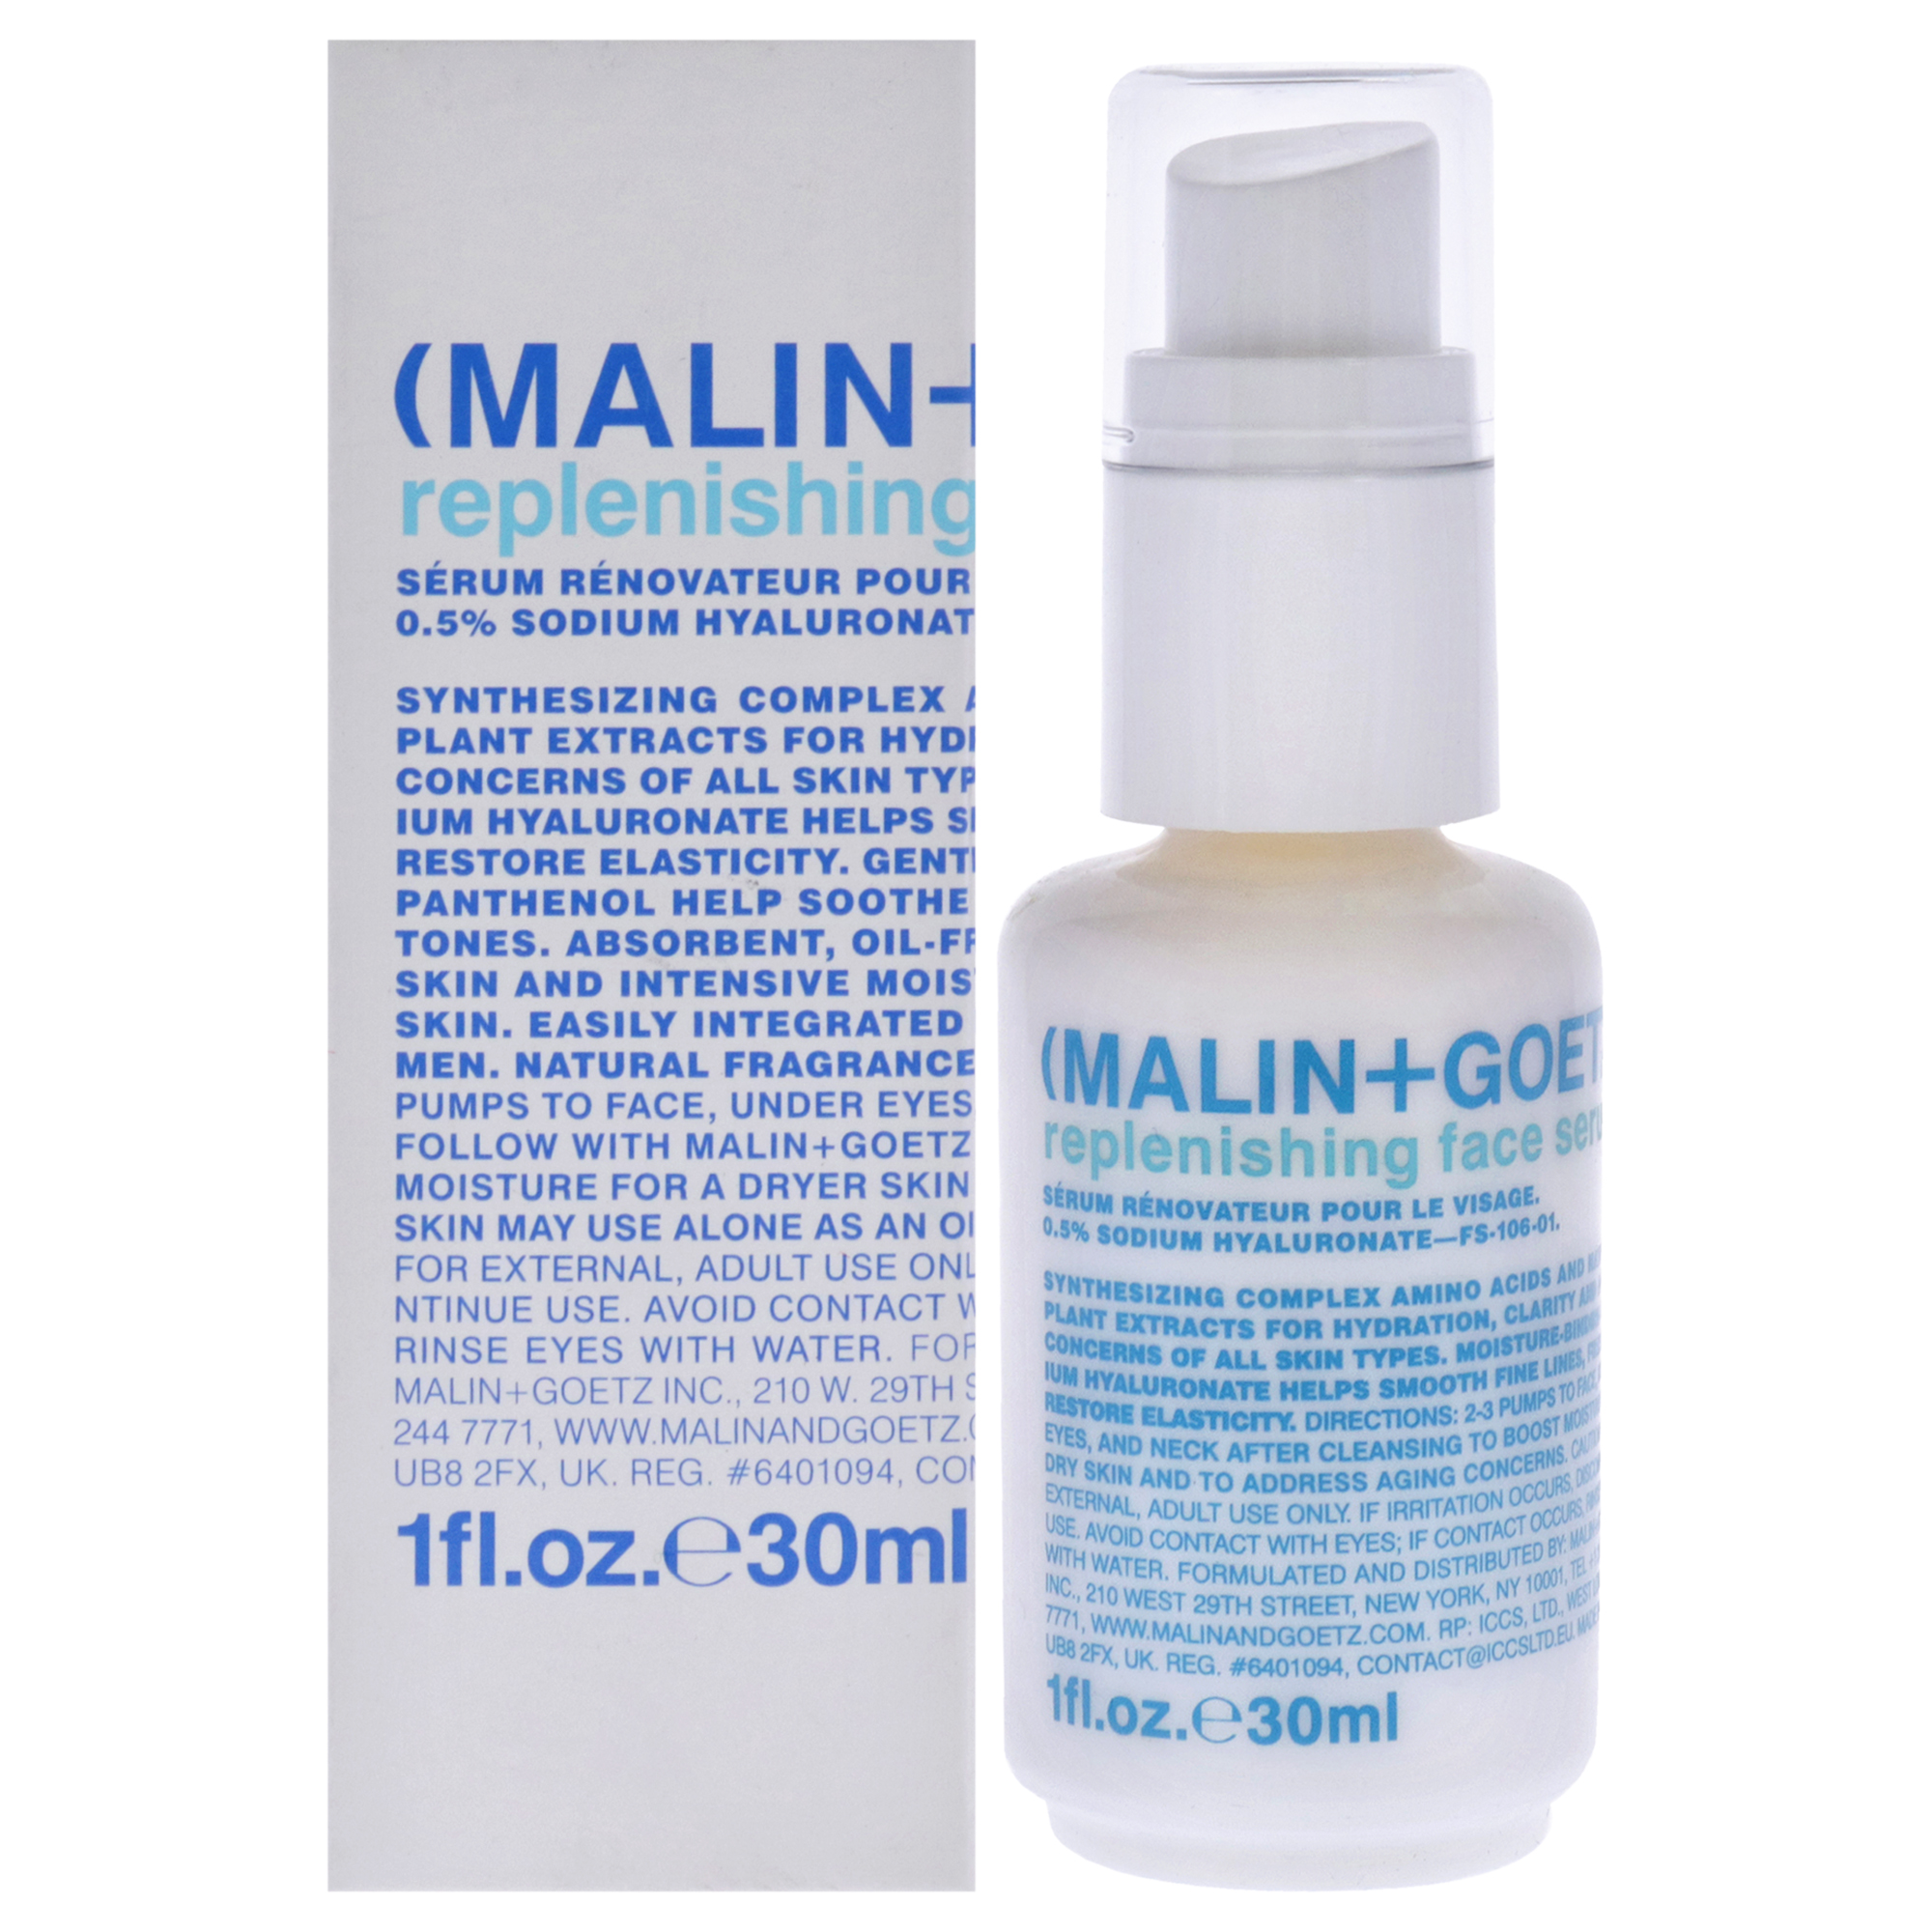 Malin+Goetz Replenishing Face Serum by Malin + Goetz for Women - 1 oz Serum